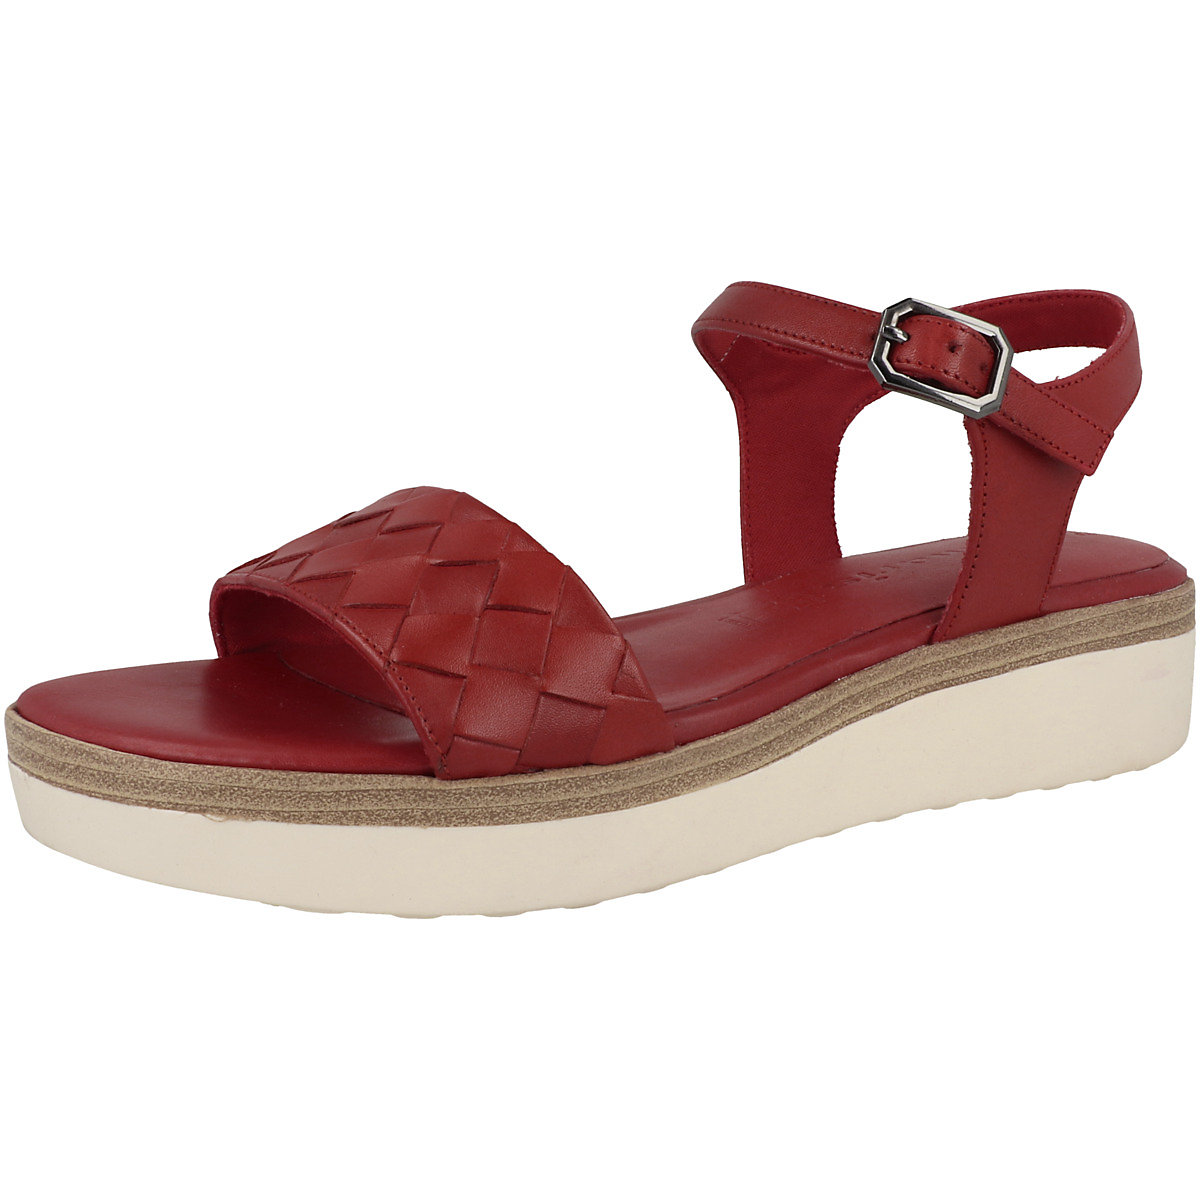 Tamaris 1-28216-20 Sandale Damen Klassische Sandalen rot